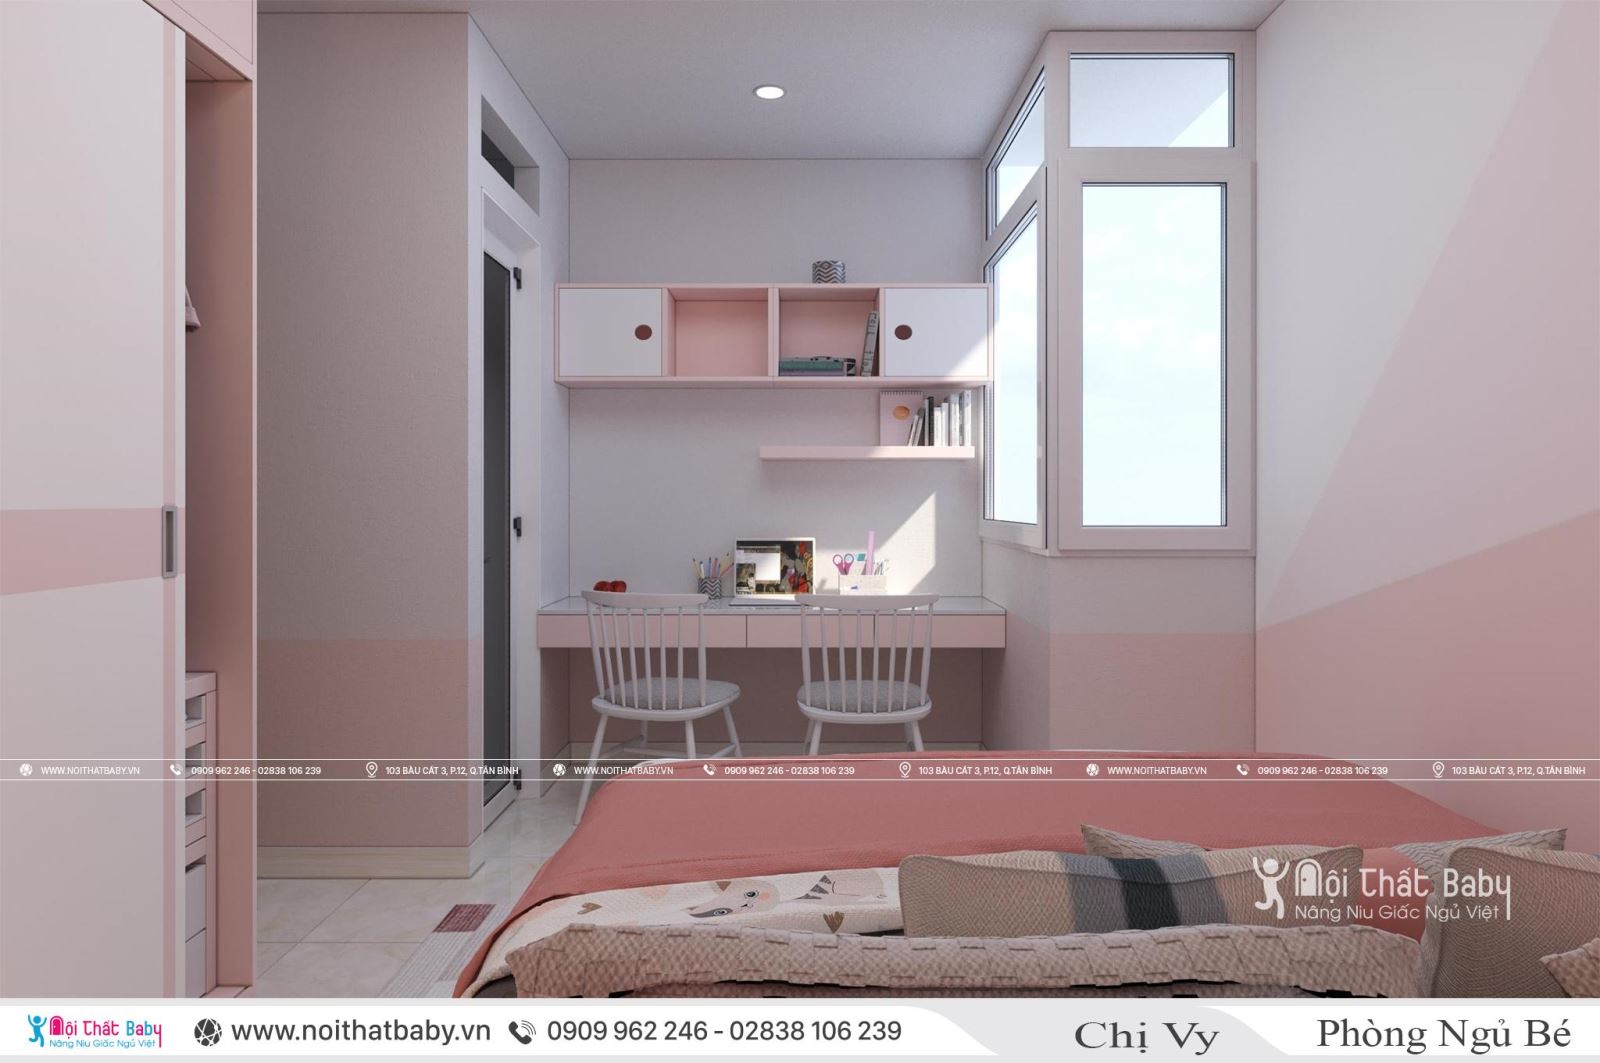 Thiết kế phòng ngủ bé gái màu hồng dễ thương